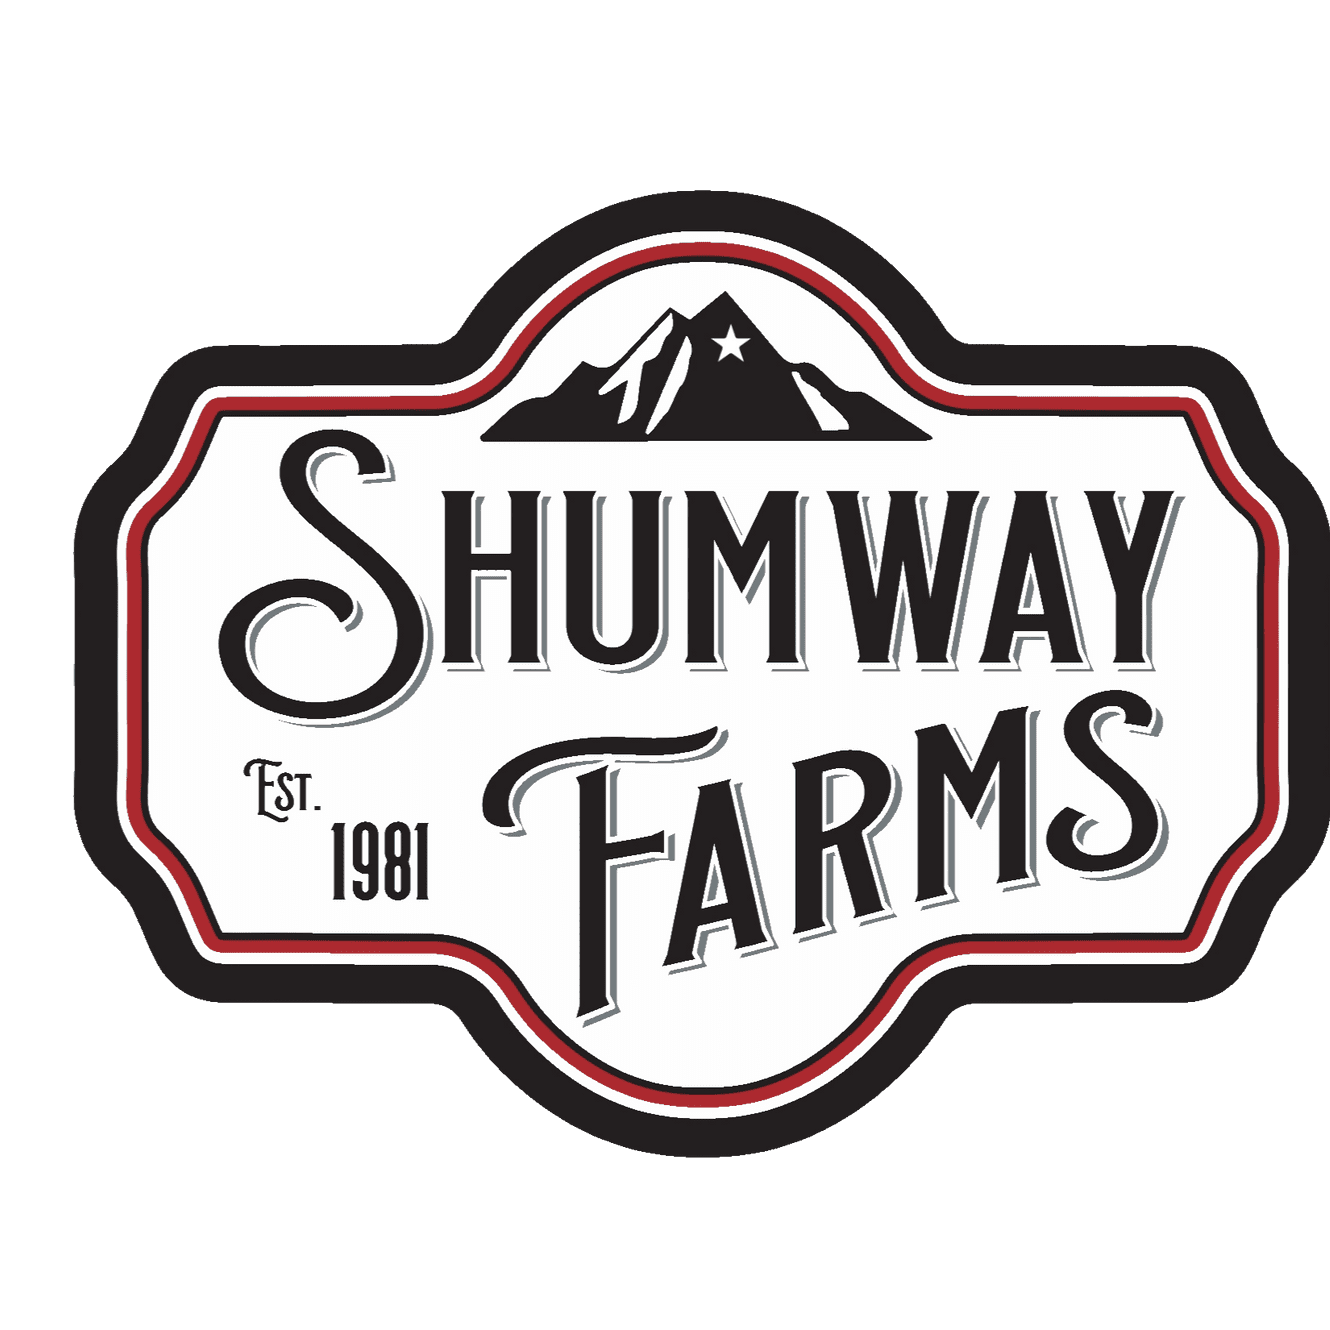 www.shumwayfarms.com